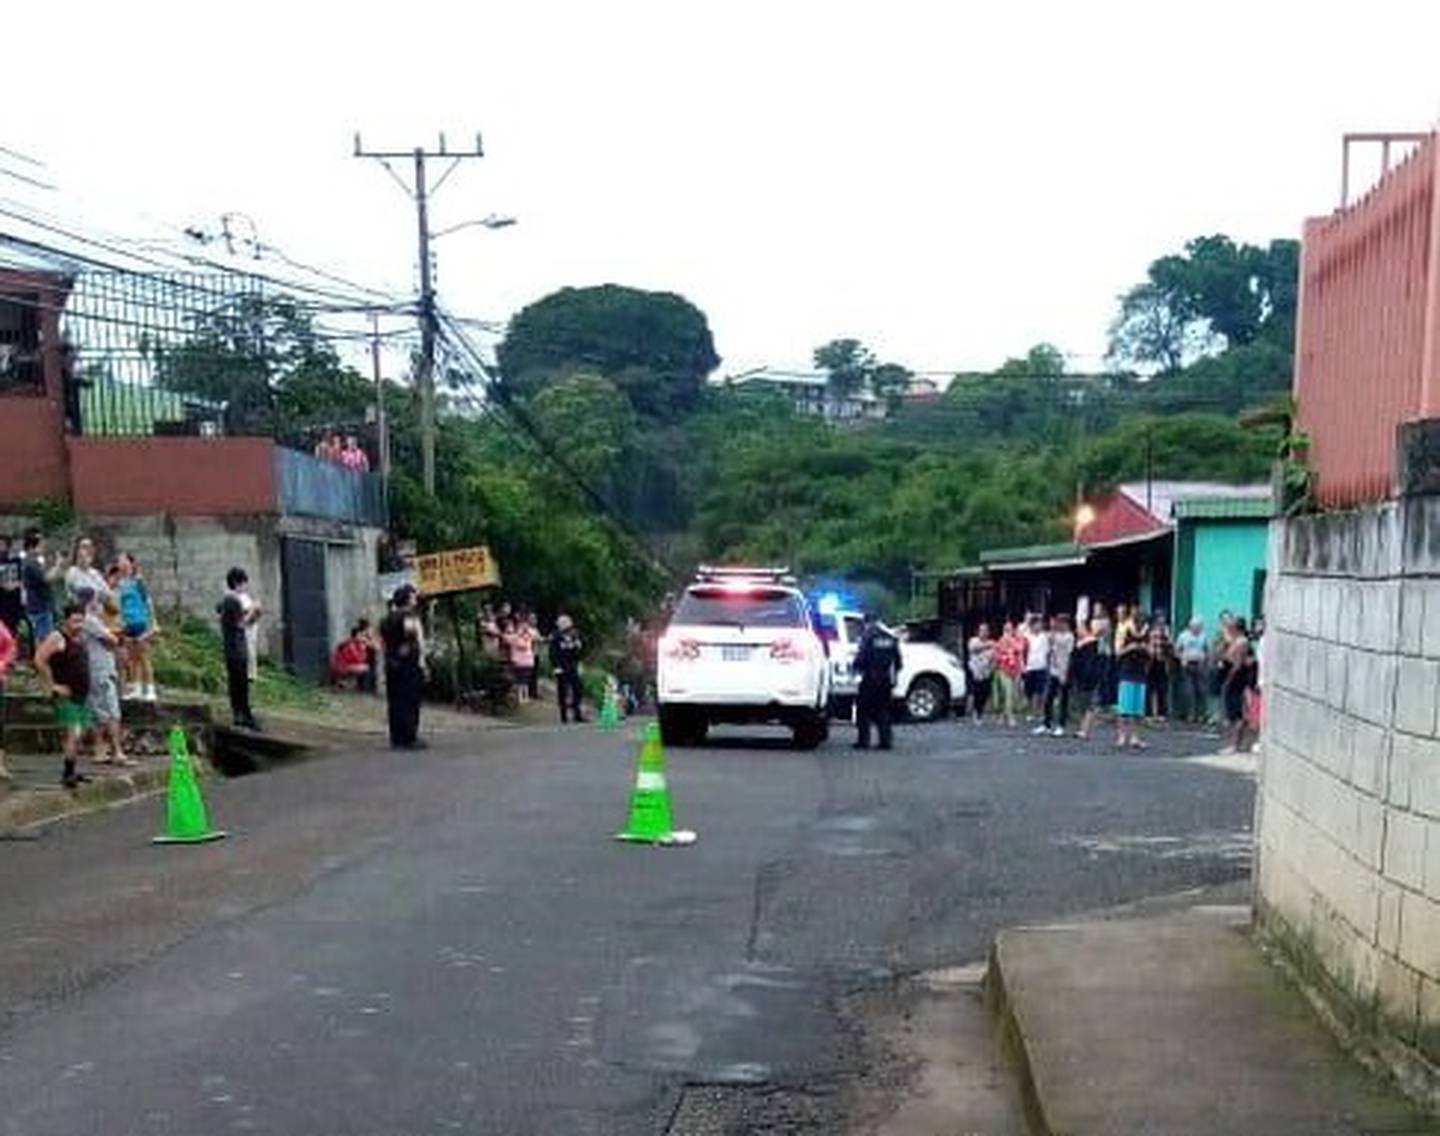 Hombres es asesinado dentro de carro en el Invu Las Cañas, Alajuela. Foto cortesía.